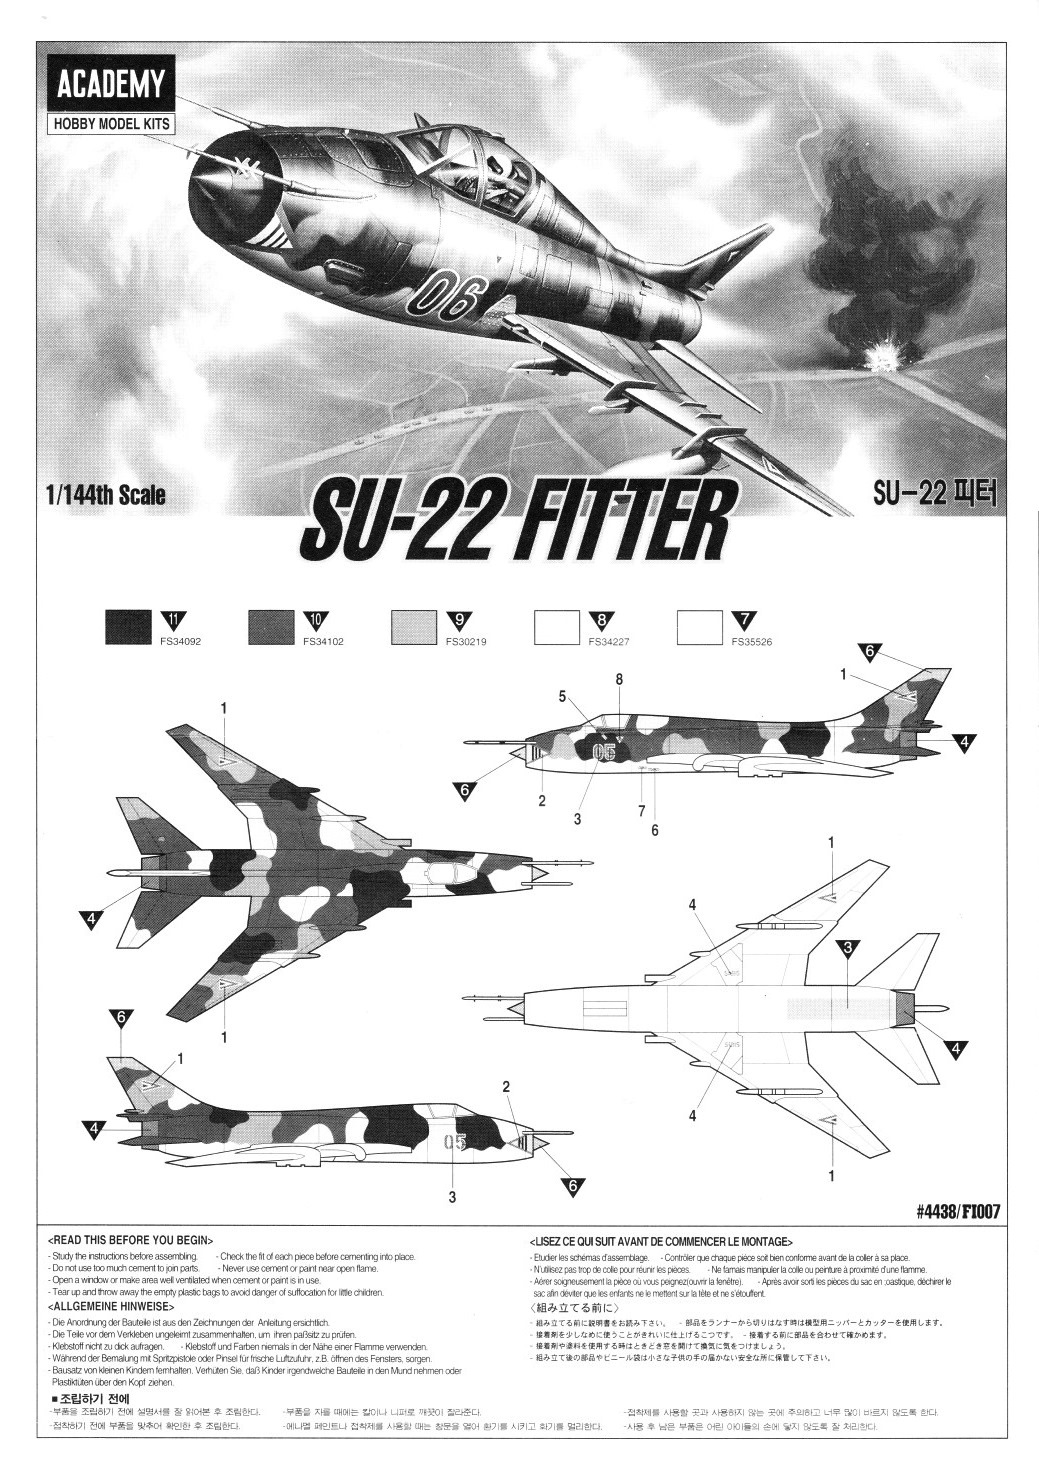 S-22 Fitter Fighter 1:144 Plastic Model Kit ACADEMY 